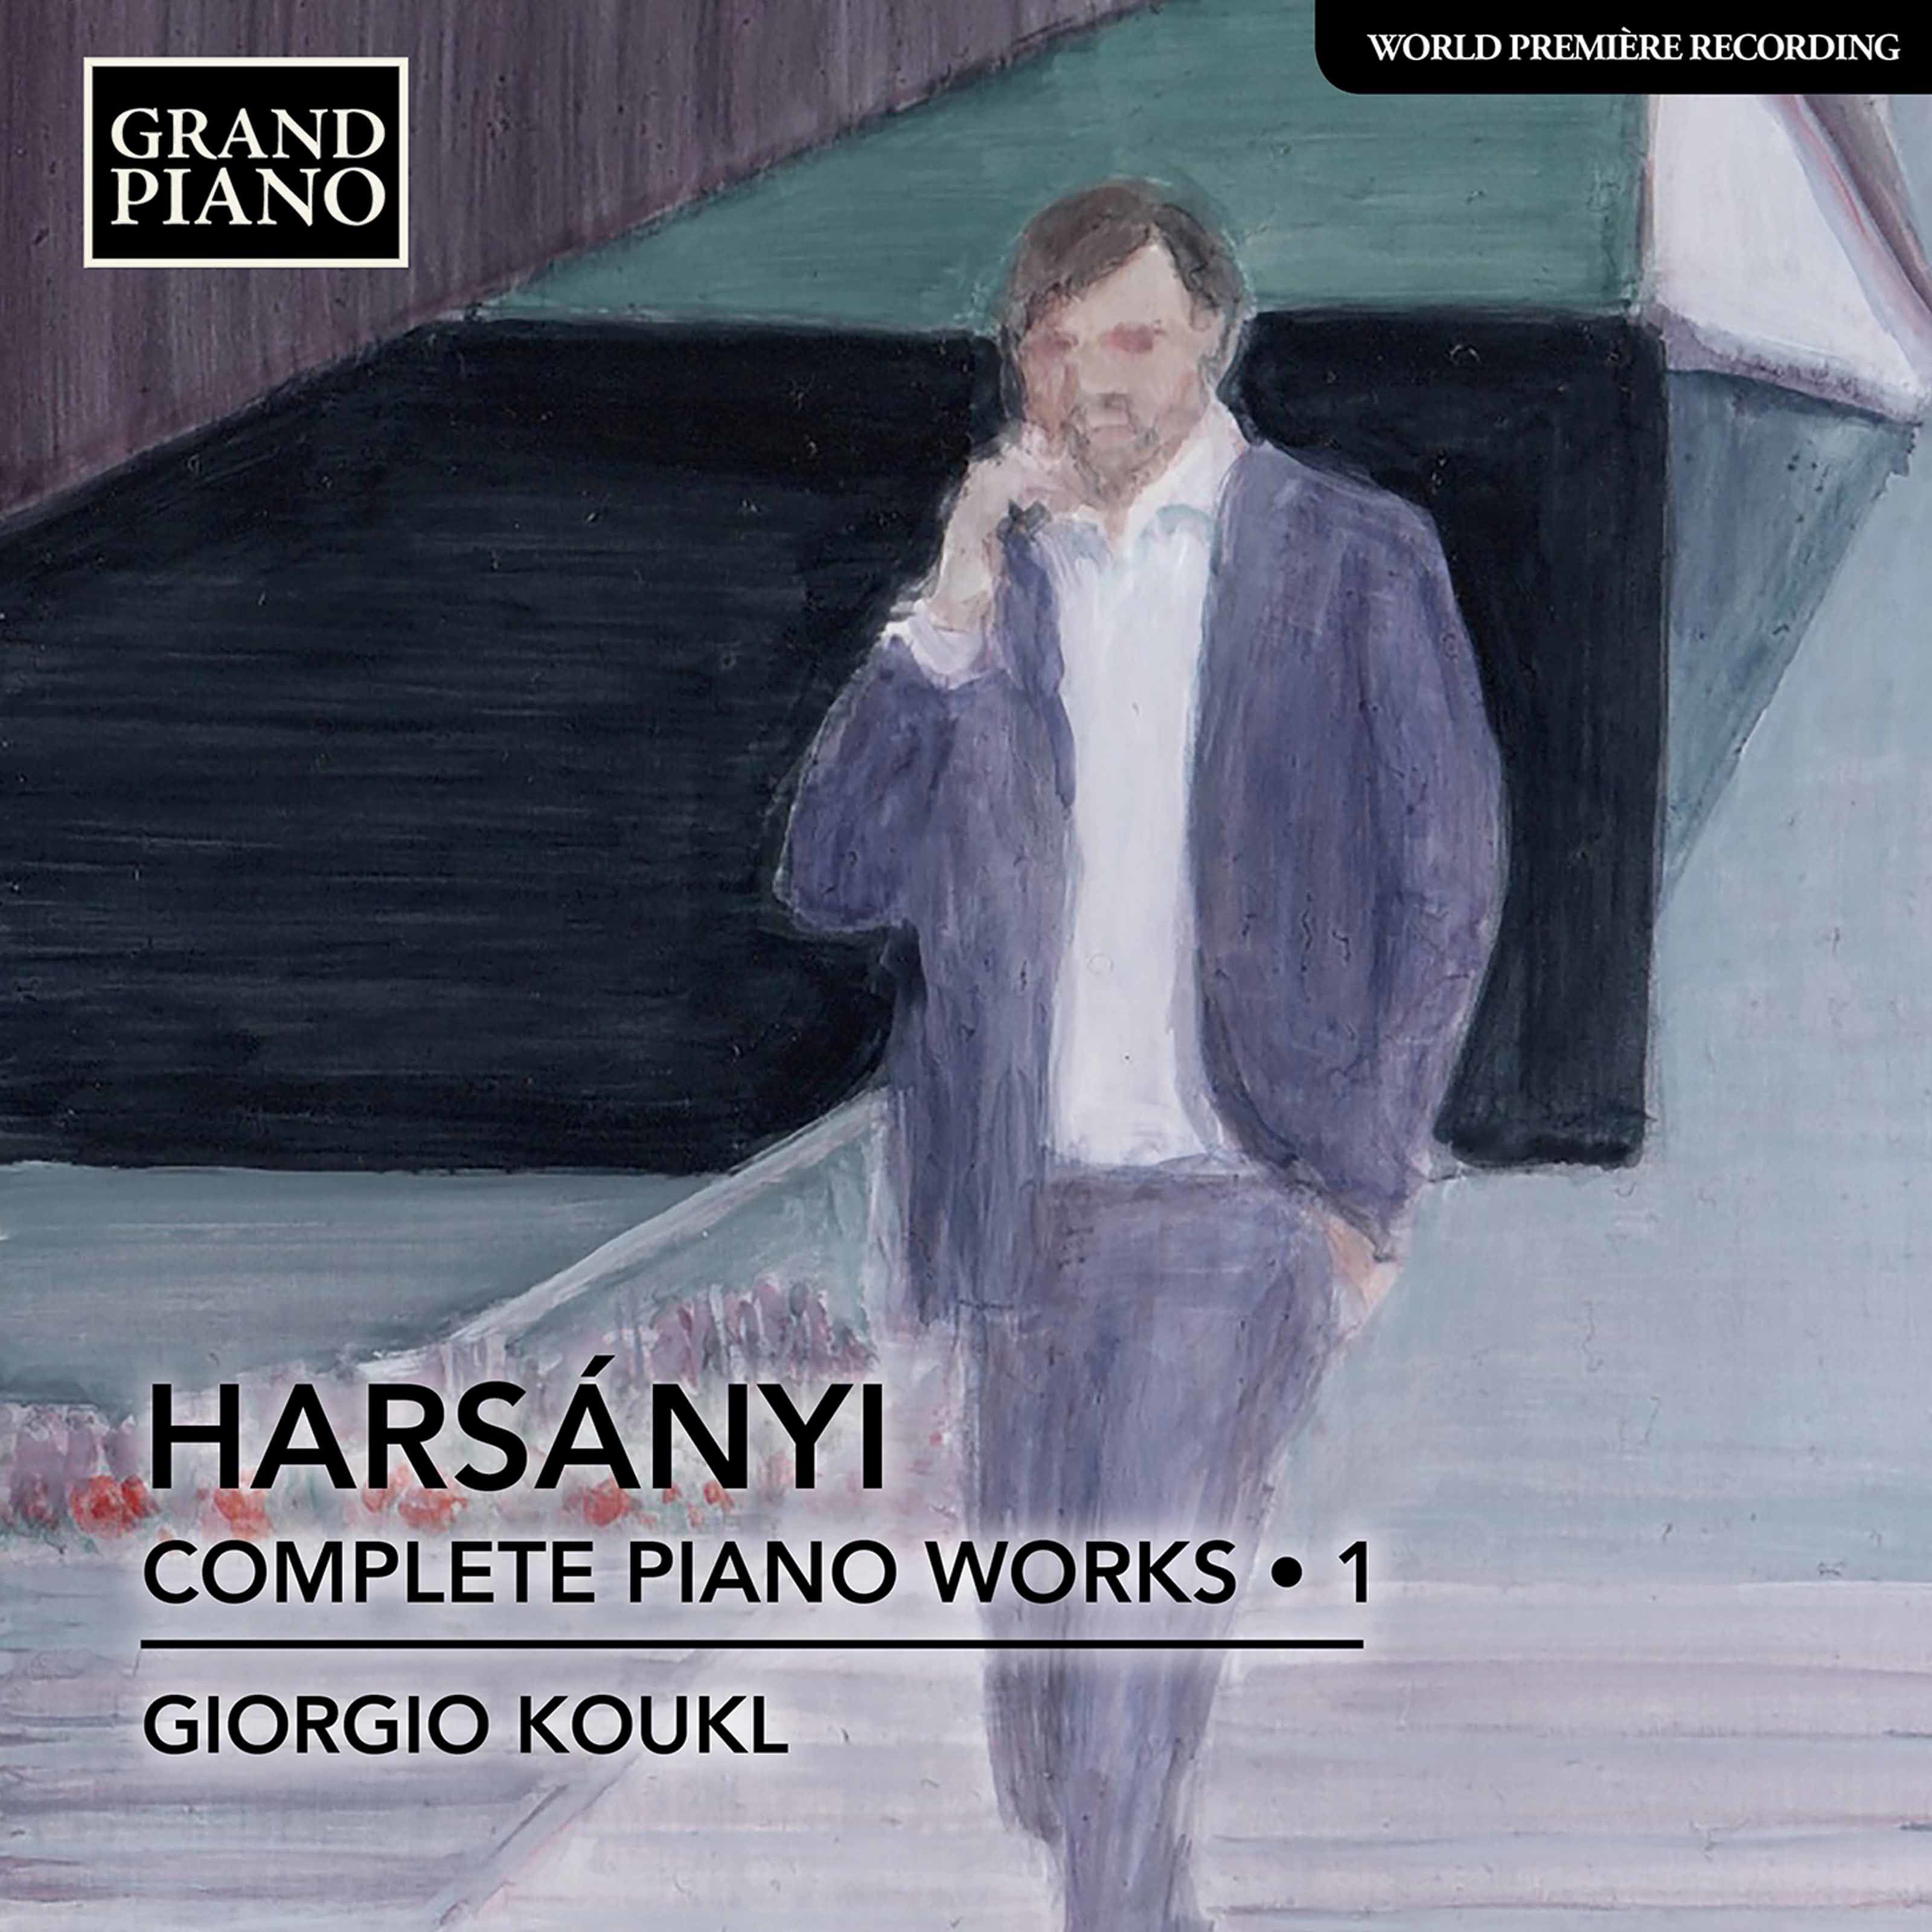 Giorgio Koukl - Harsanyi: Complete Piano Works, Vol. 1 (2020) [FLAC 24bit/96kHz]